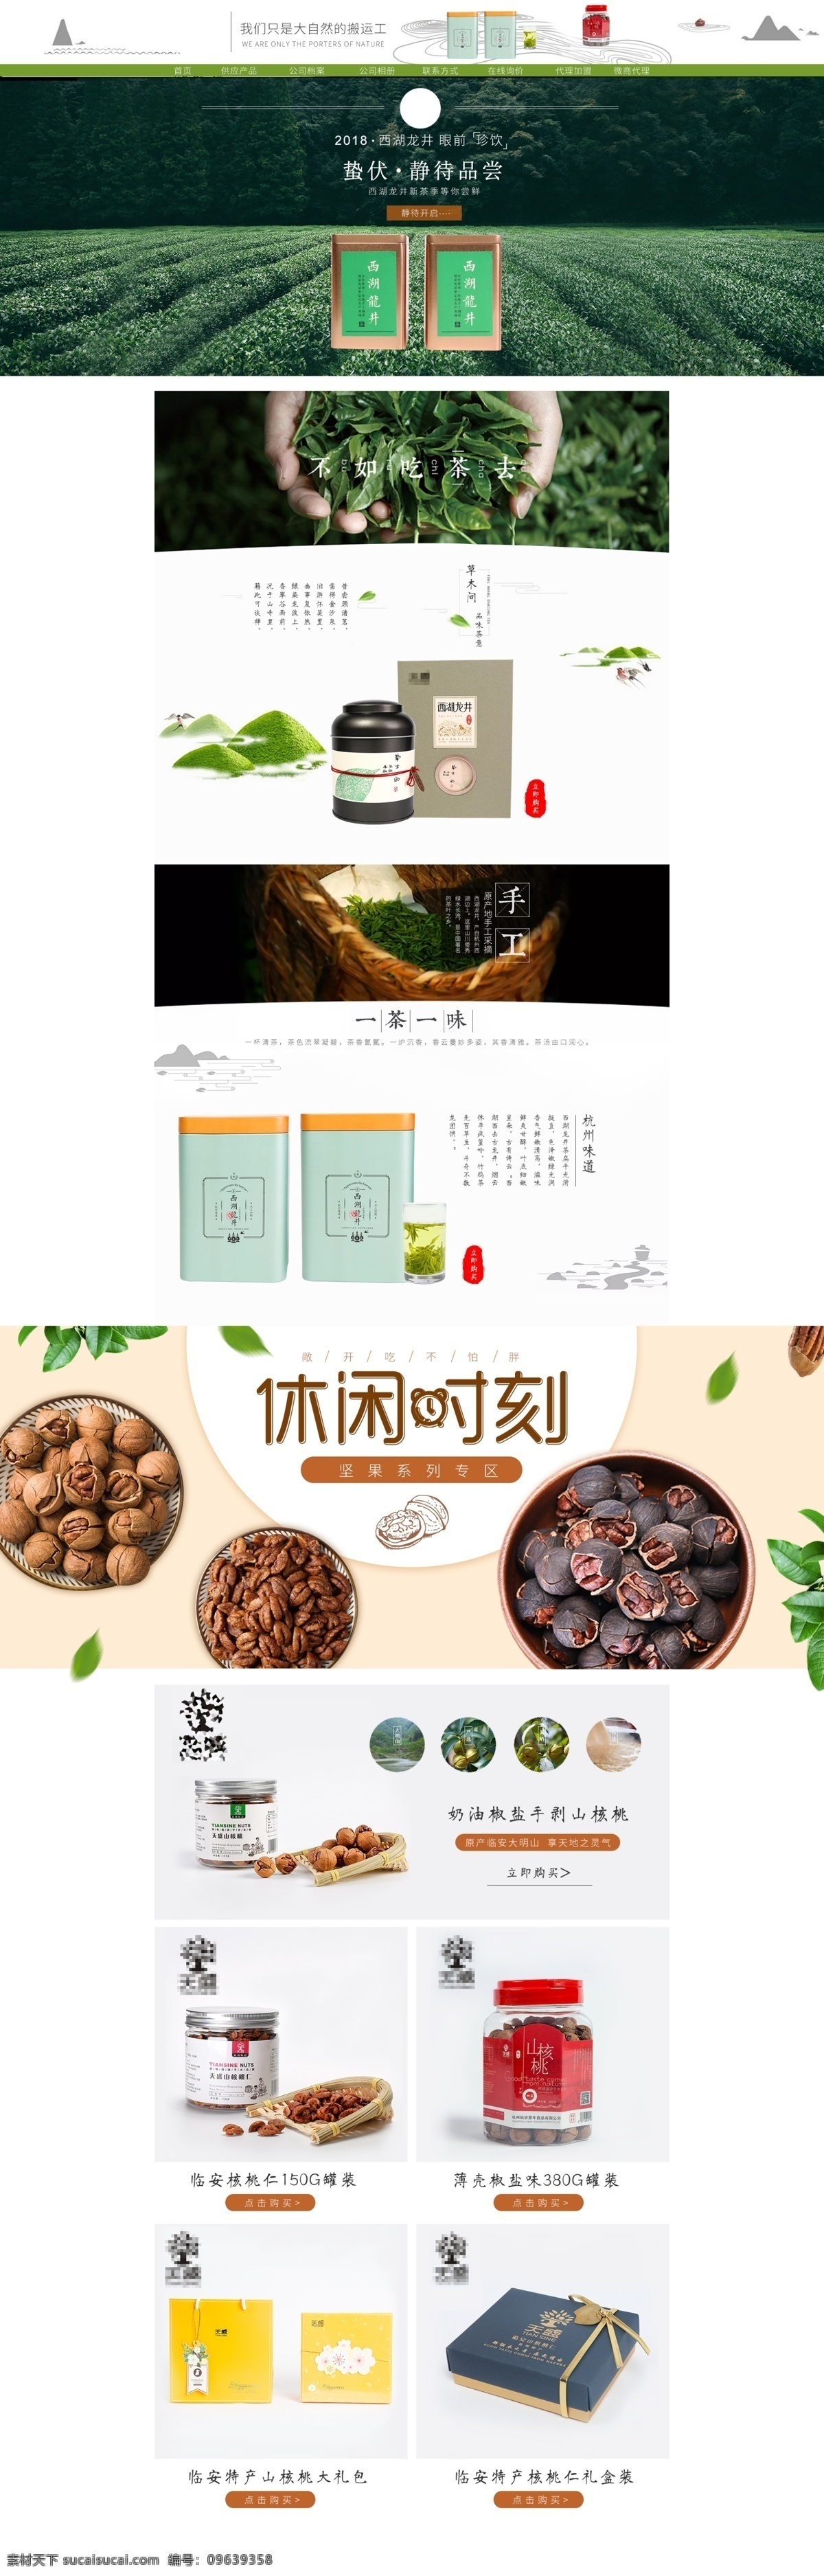 淘宝 天猫 食品 首页 模板 简约 小清新 茶 核桃 中式风